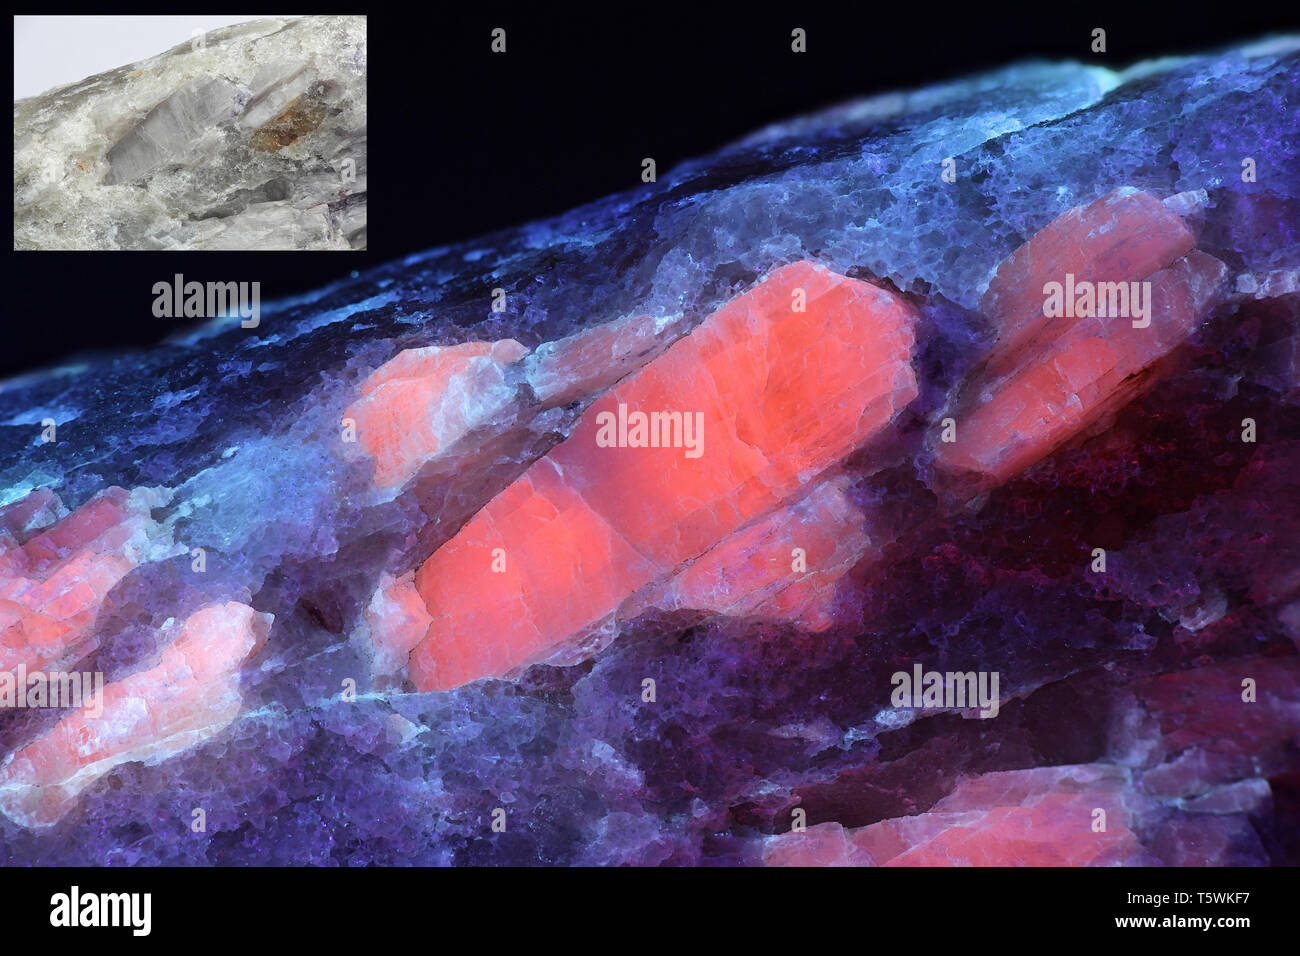 Les cristaux du minerai de lithium industriel majeur le spodumène montrant la fluorescence rouge dans la lumière ultraviolette (365 nm). Image plus petite même échantillon en lumière normale. Banque D'Images